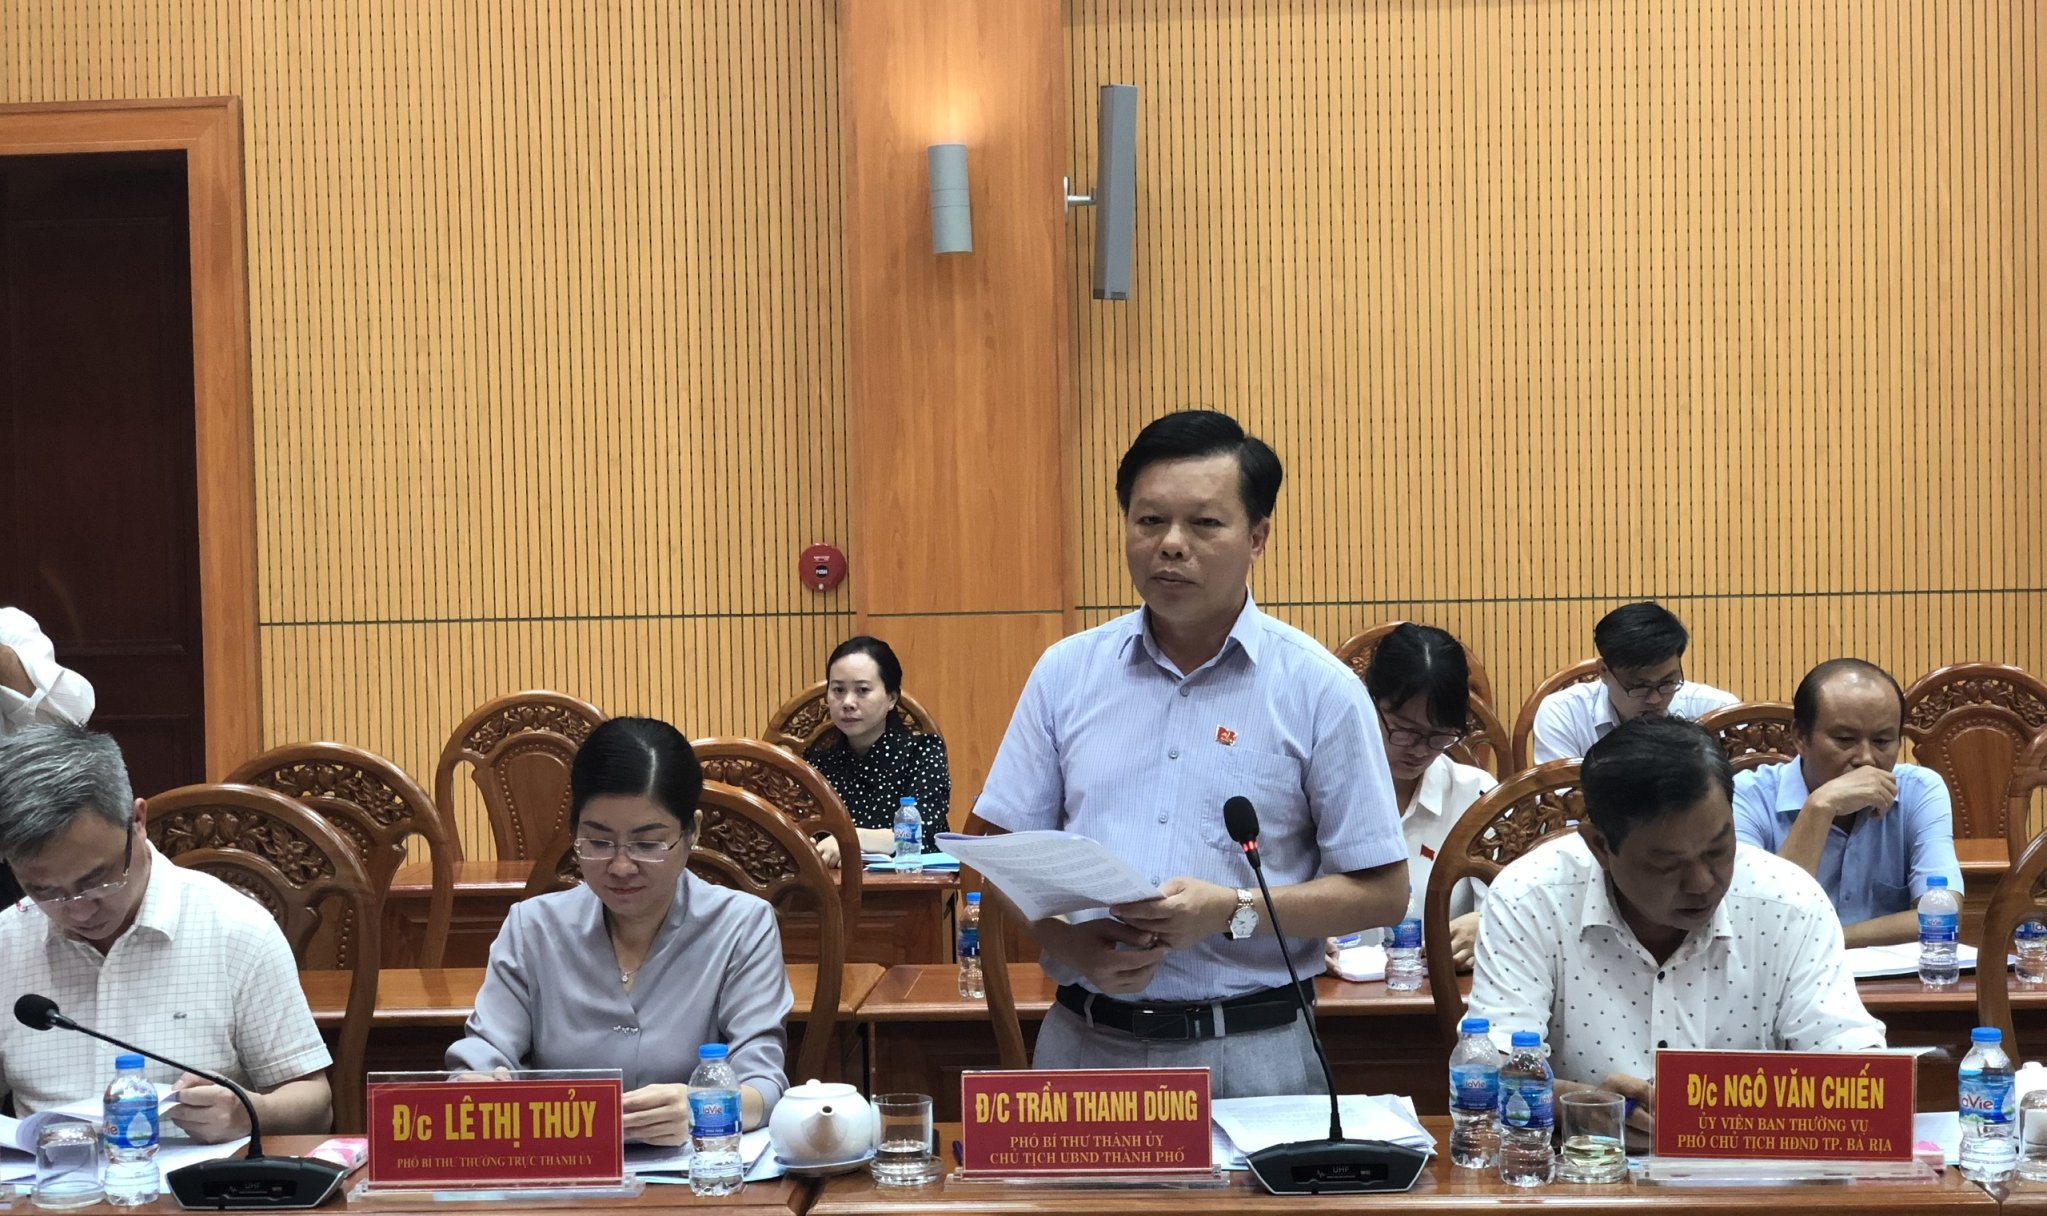 Ông Trần Thanh Dũng, Chủ tịch UBND TP. Bà Rịa báo cáo về tình hình triển khai thực hiện dự án cao tốc  Biên Hòa-Vũng Tàu đoạn qua thành phố.